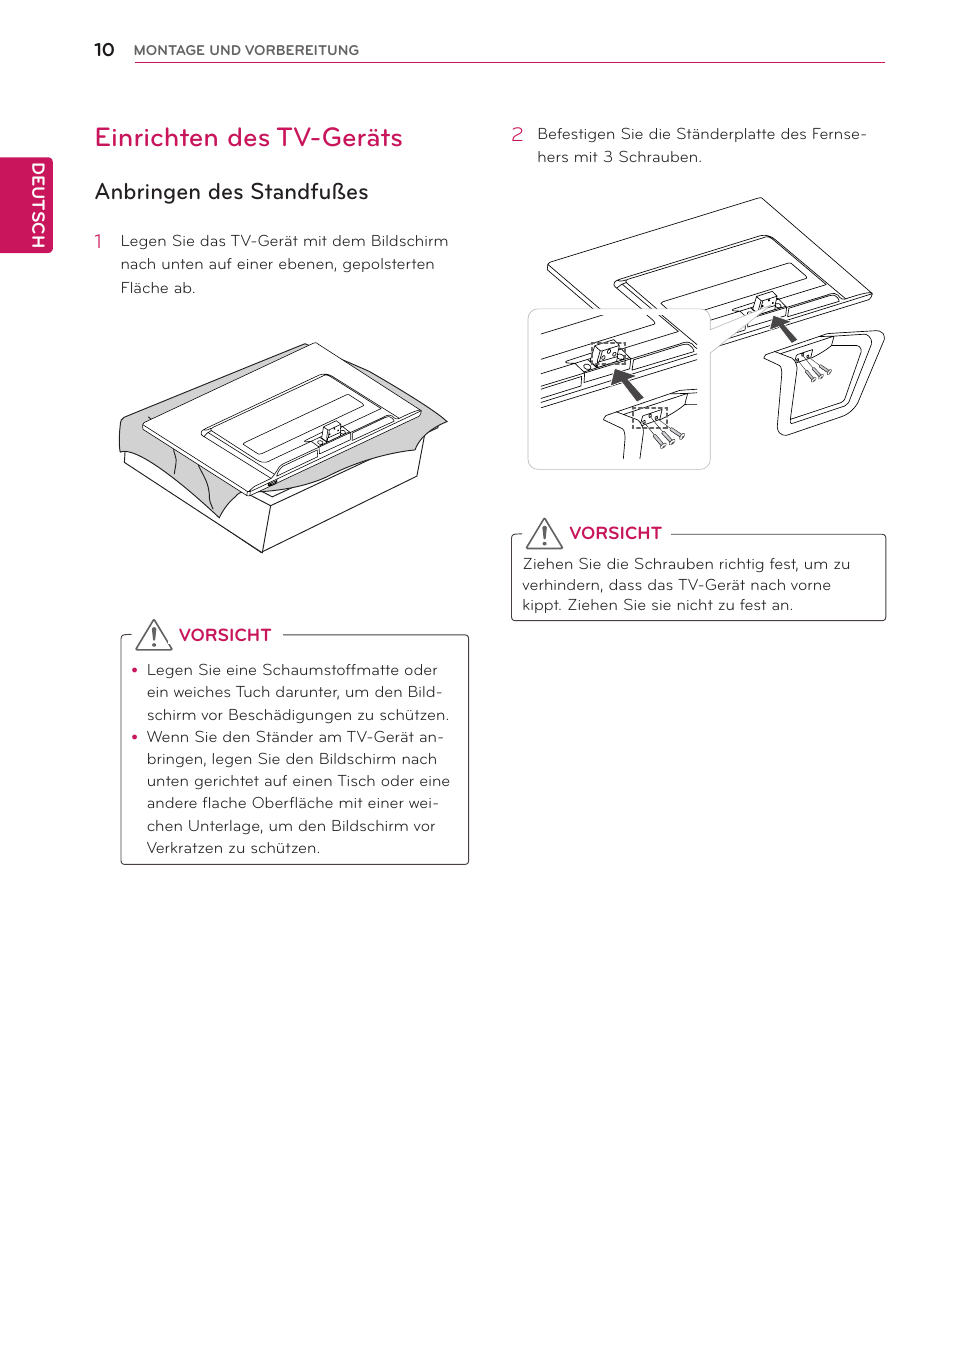 Einrichten des tv-geräts, Anbringen des standfußes | LG TM2792S-SR Benutzerhandbuch | Seite 10 / 46